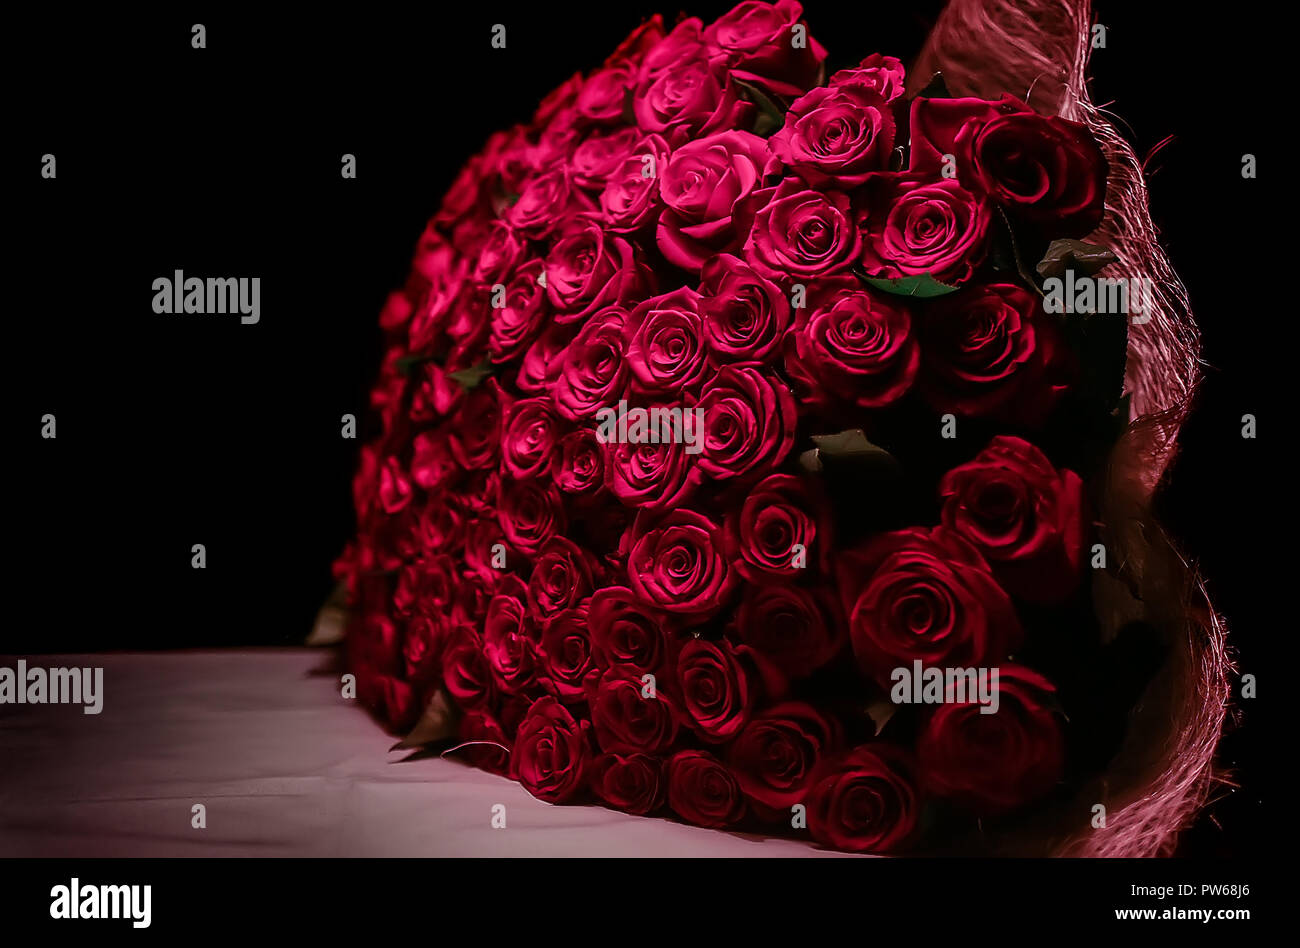 Gros bouquet de roses rouges sur fond sombre Photo Stock - Alamy